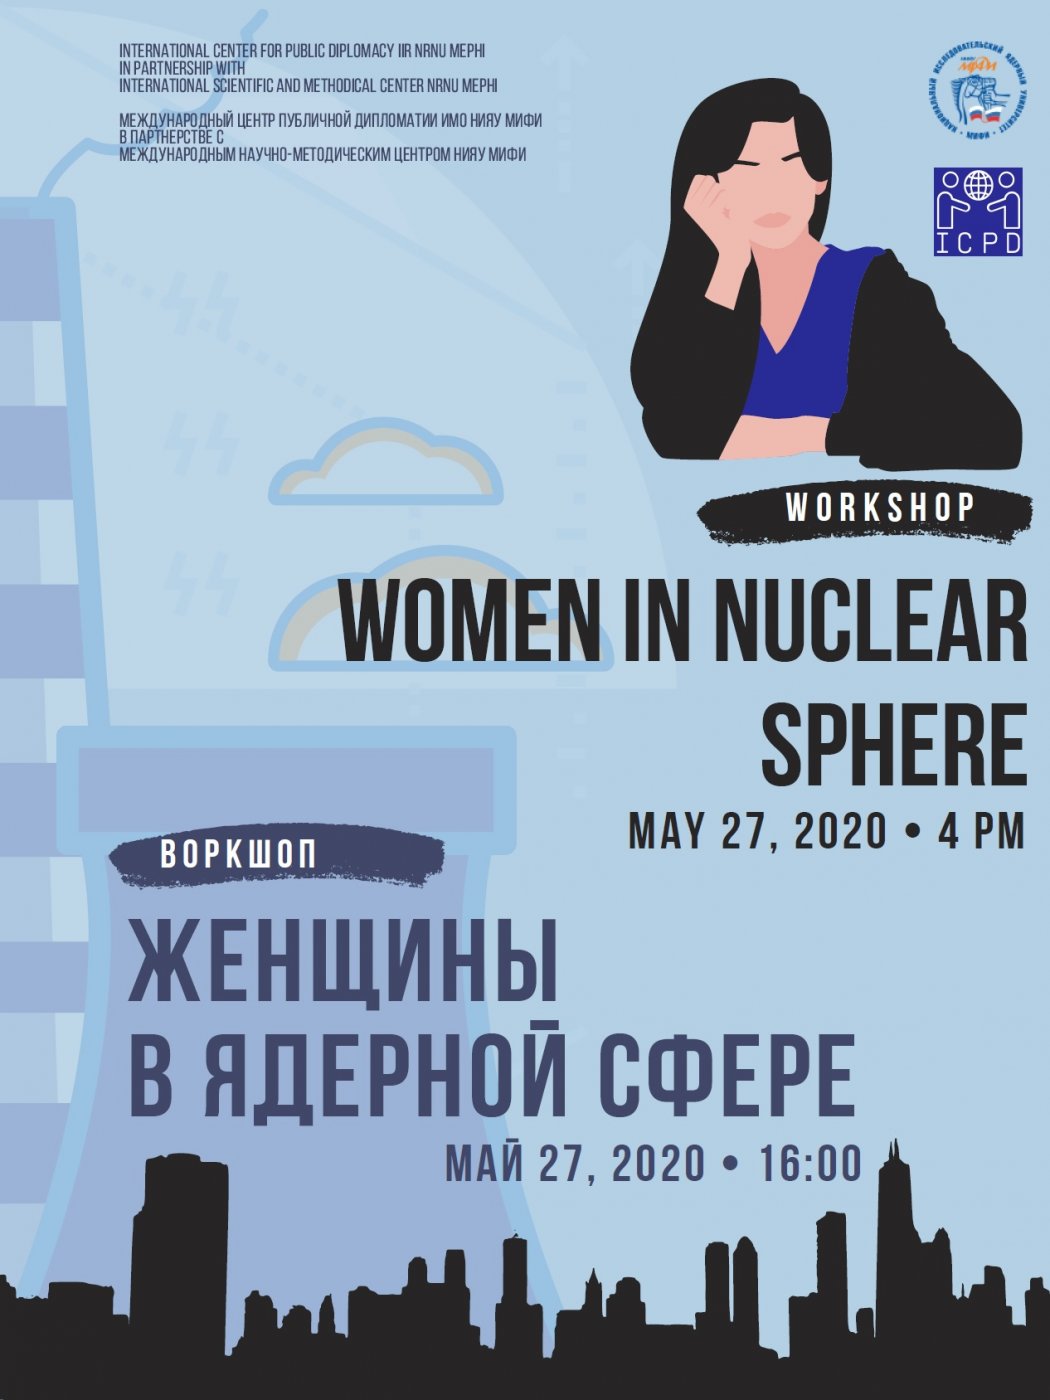 Workshop “Women in nuclear sphere”.